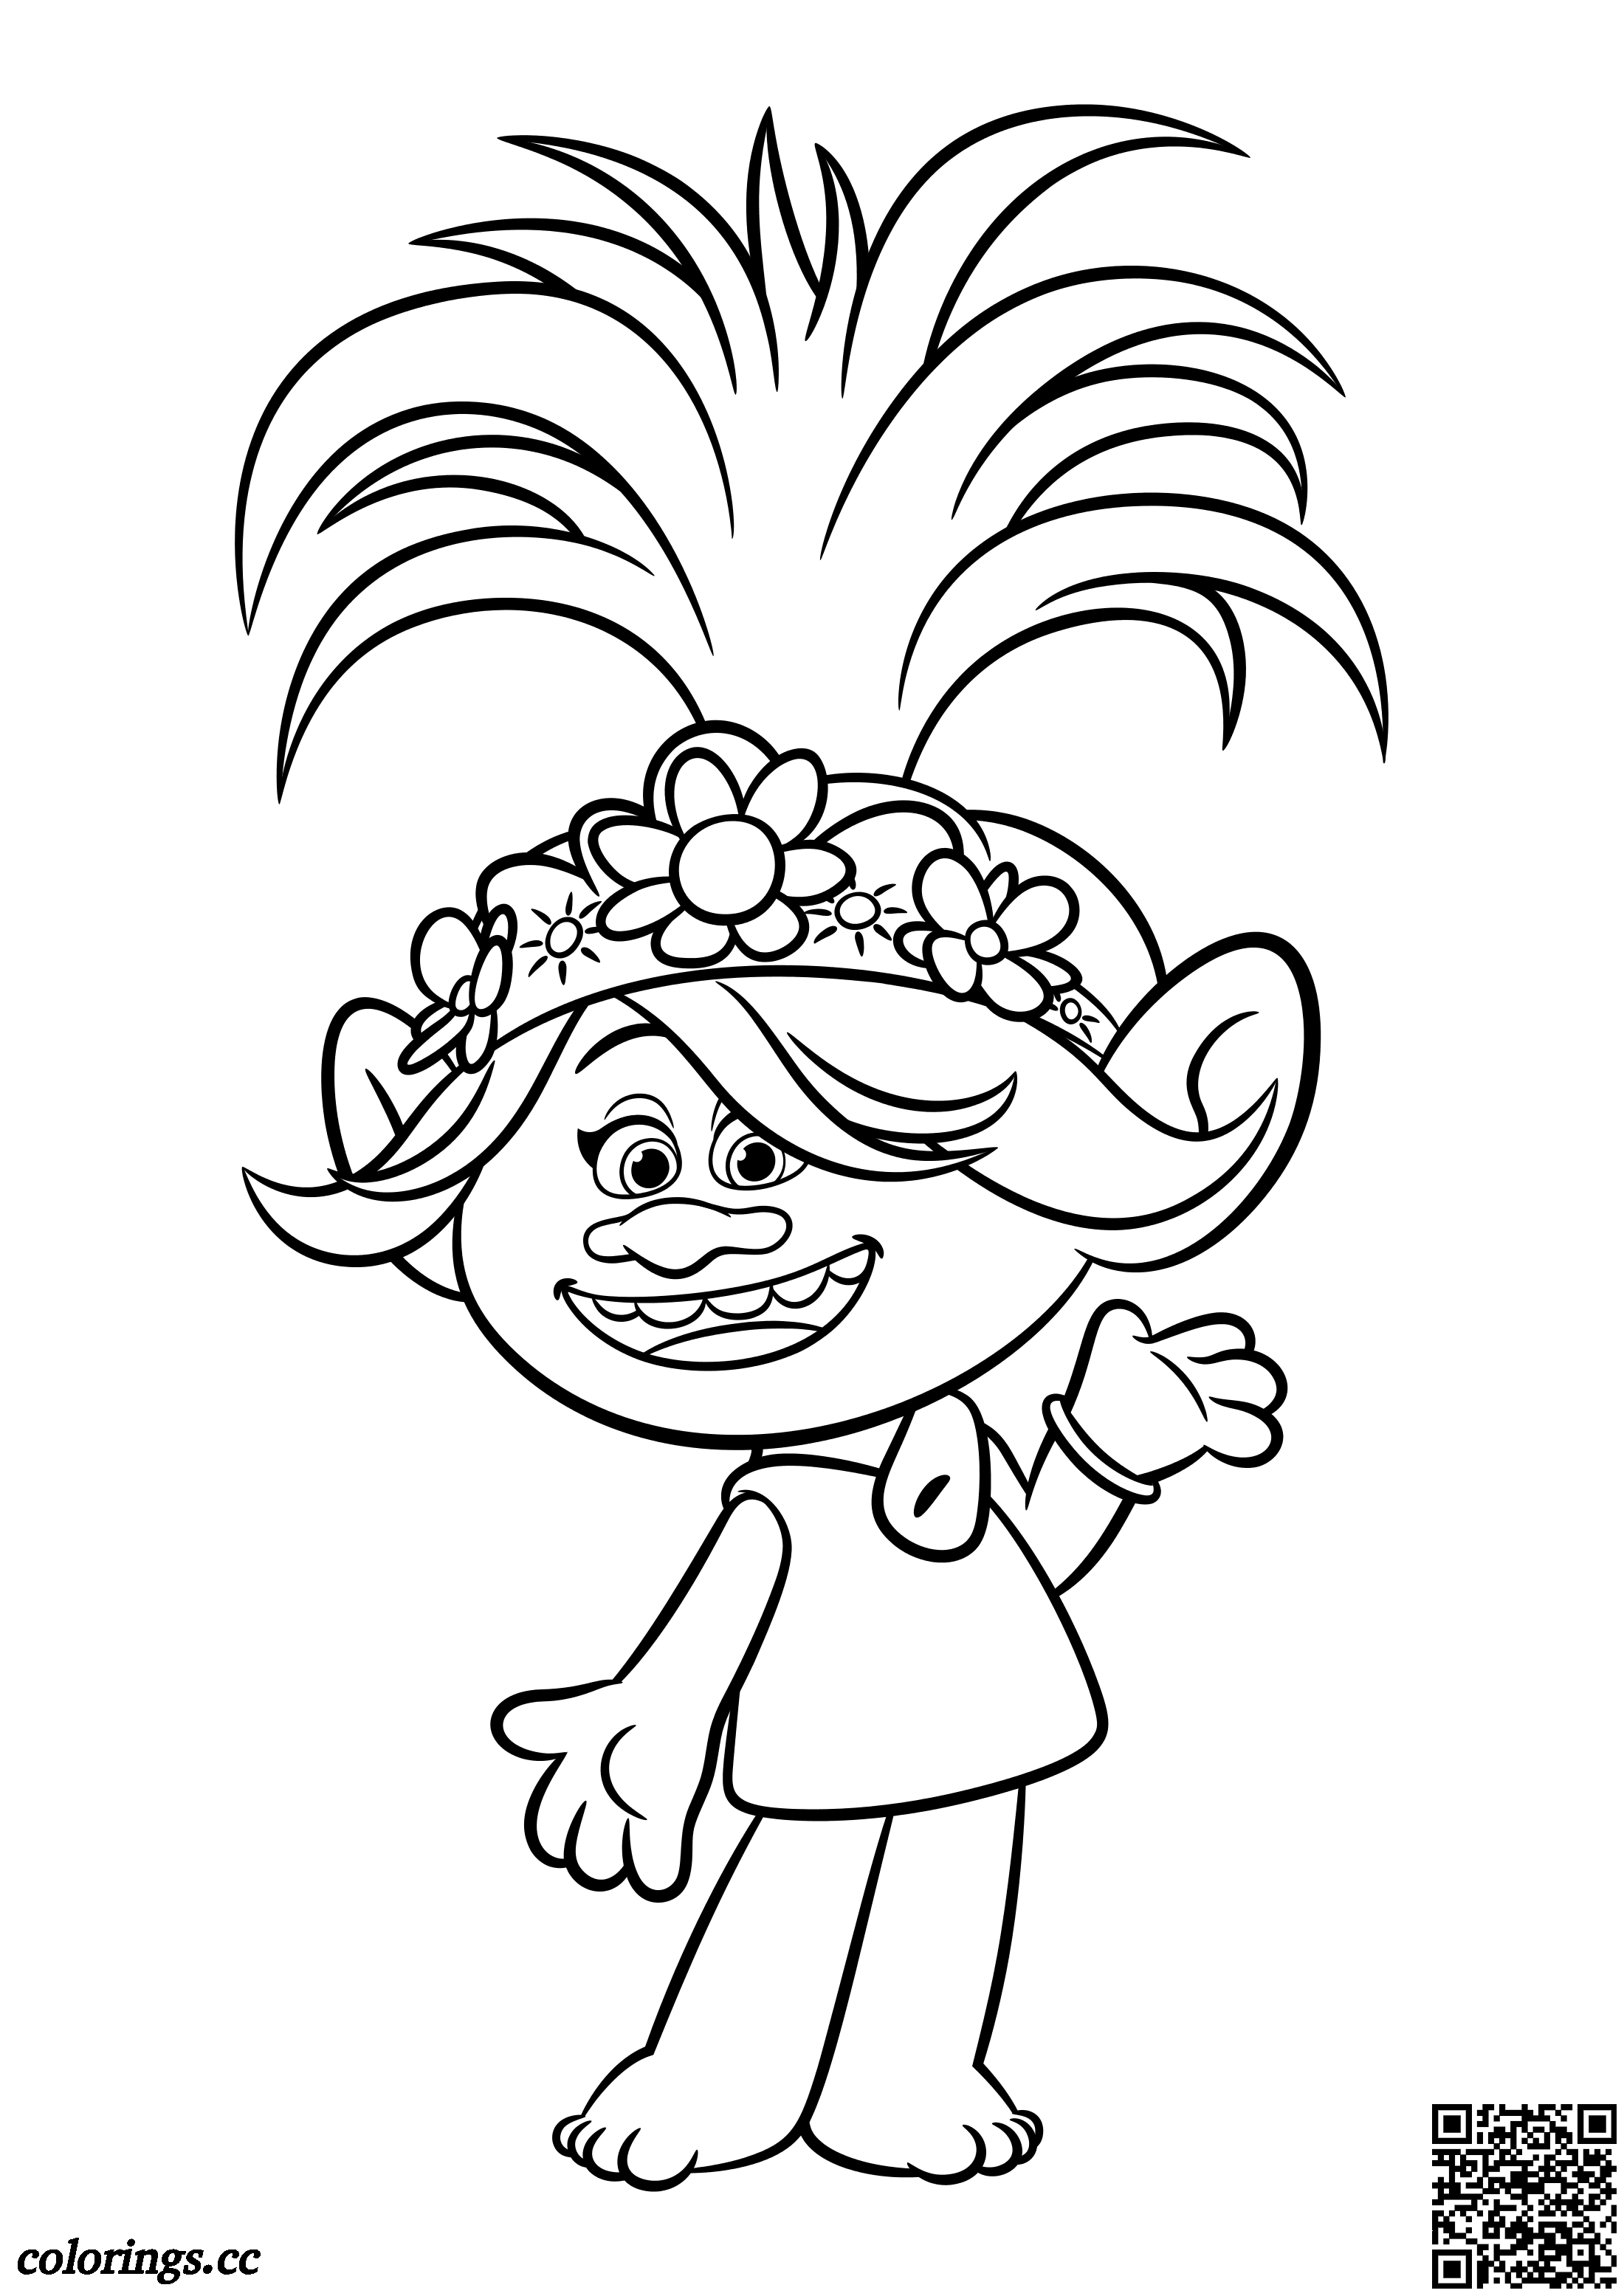 Poppy, a princesa dos Trolls para colorir e imprimir